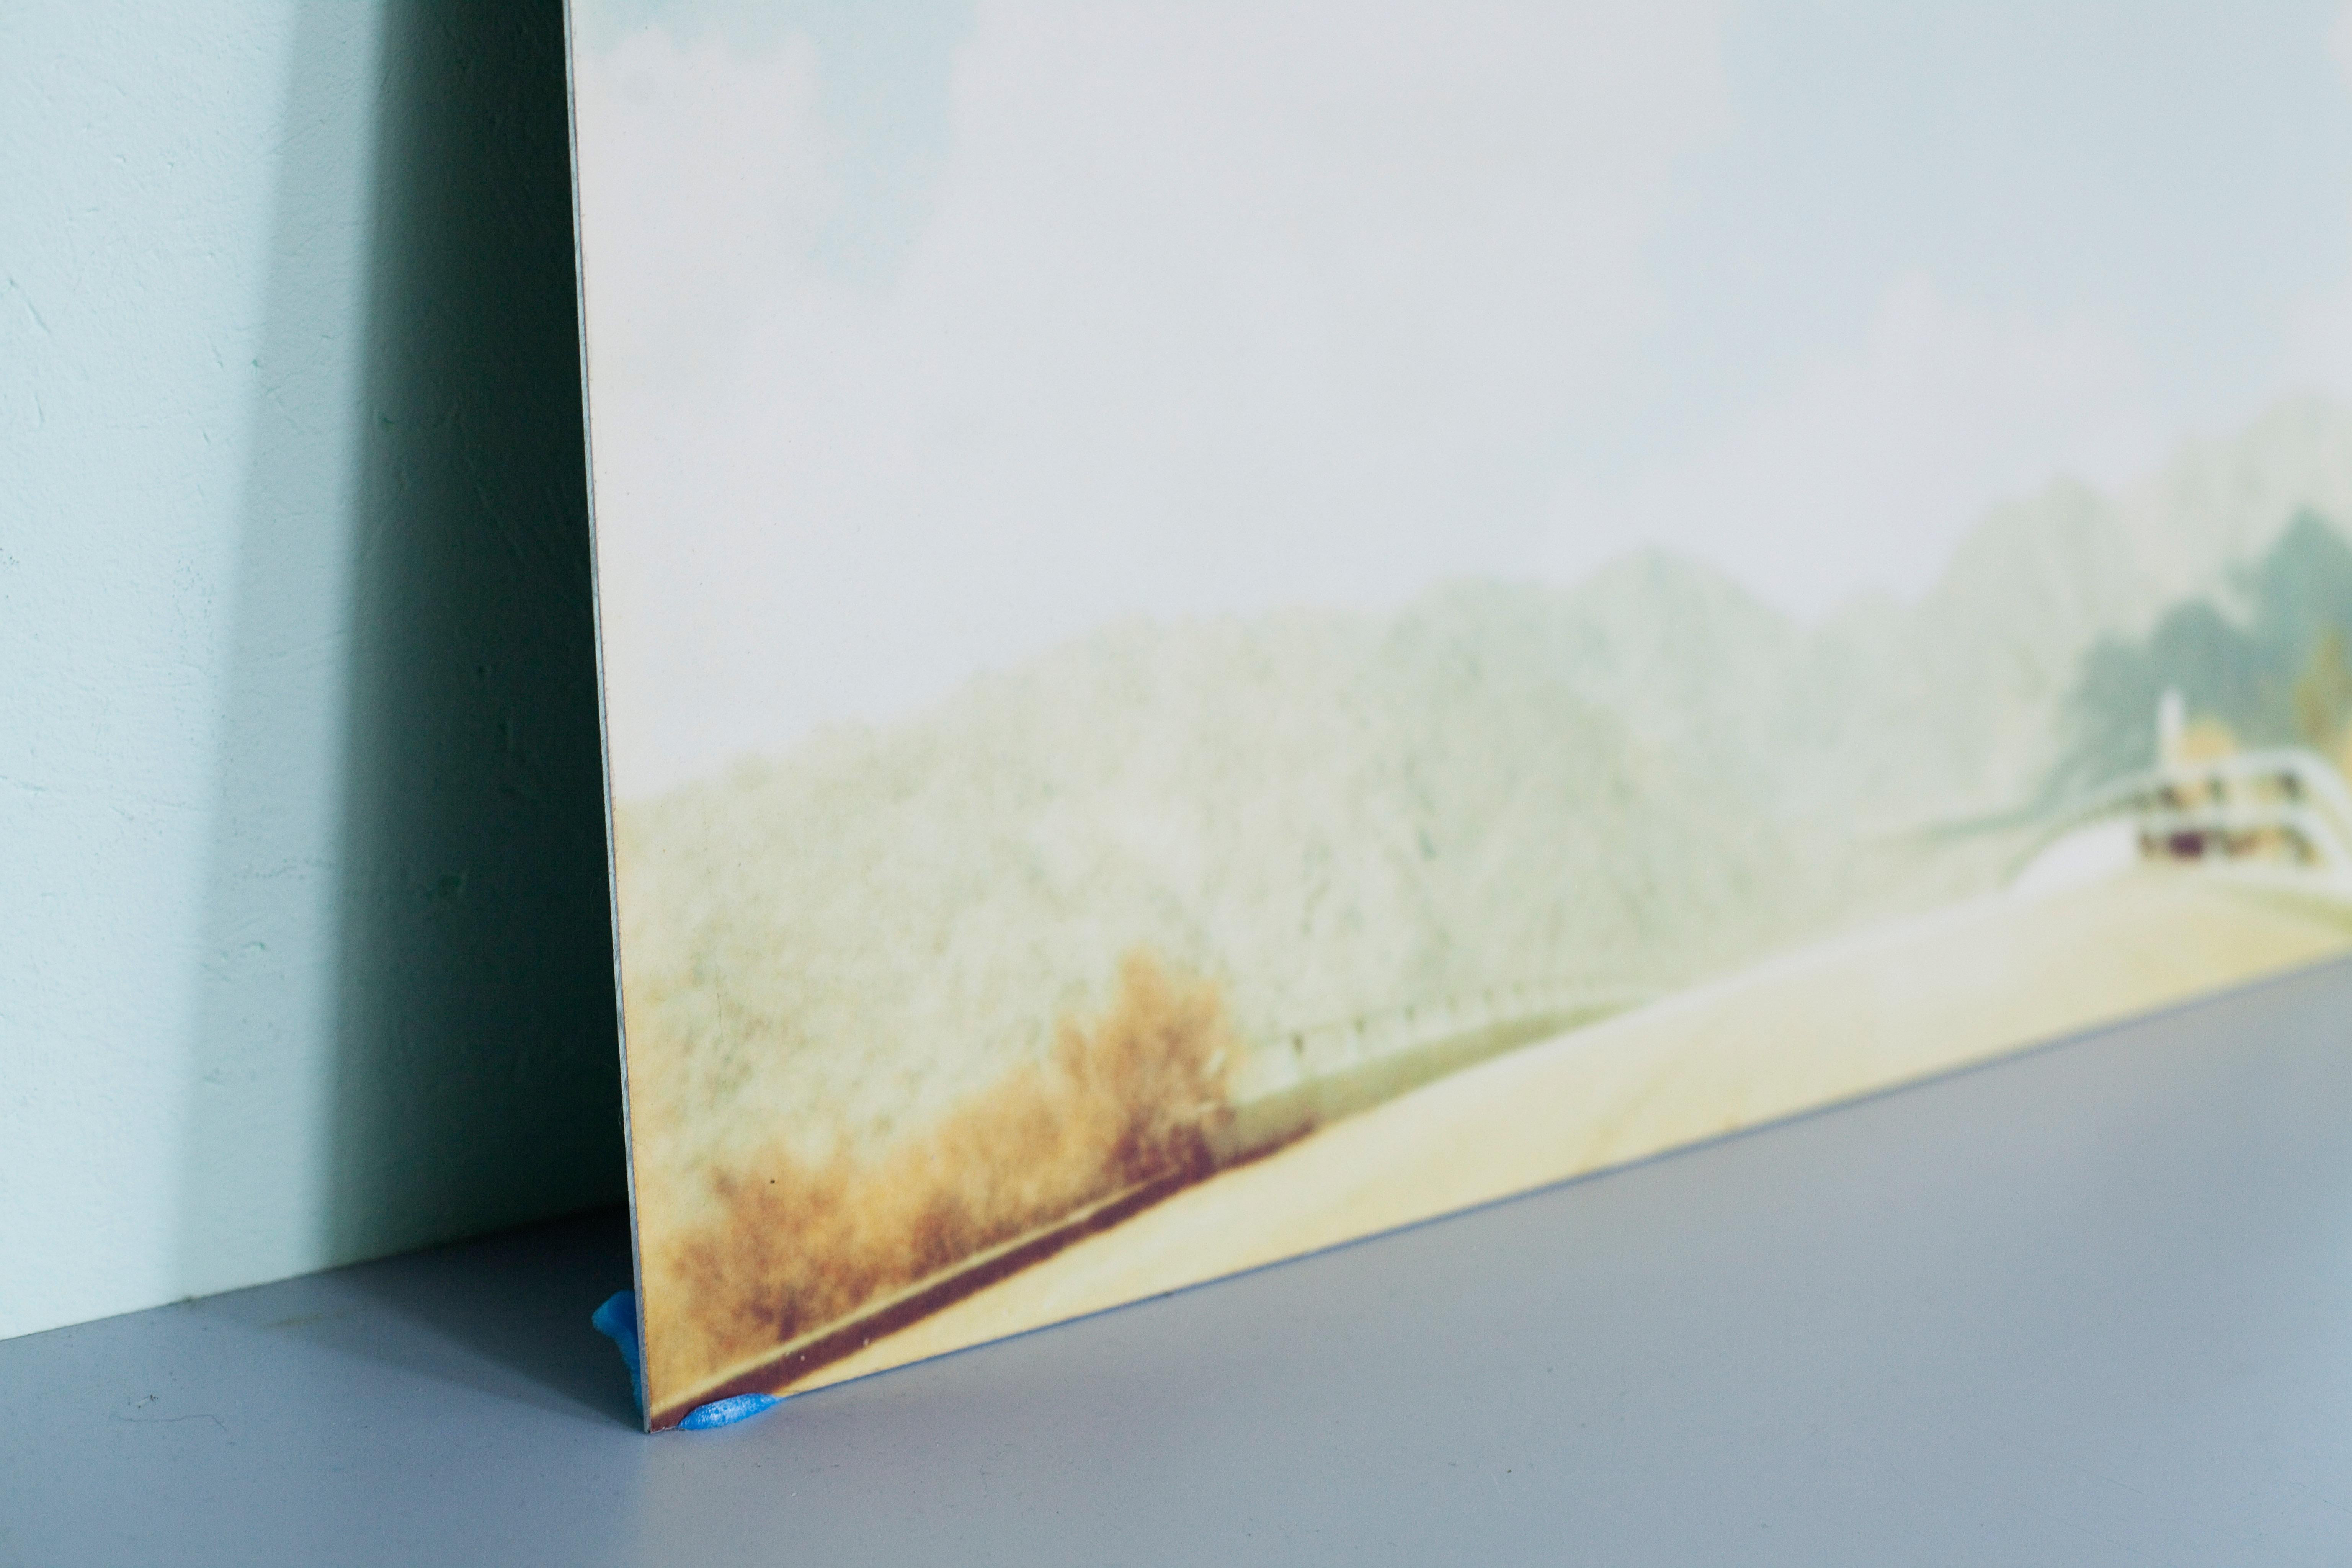 Gebirge (Fremder als das Paradies) - 1999

55x72cm, 
Auflage 3/5,
Analoger C-Print, gedruckt von der Künstlerin, basierend auf einem Polaroid. 
Montiert auf Aluminium mit mattem UV-Schutz. 
Künstlerinventar Nummer 535.03. 
Signiert auf der Rückseite